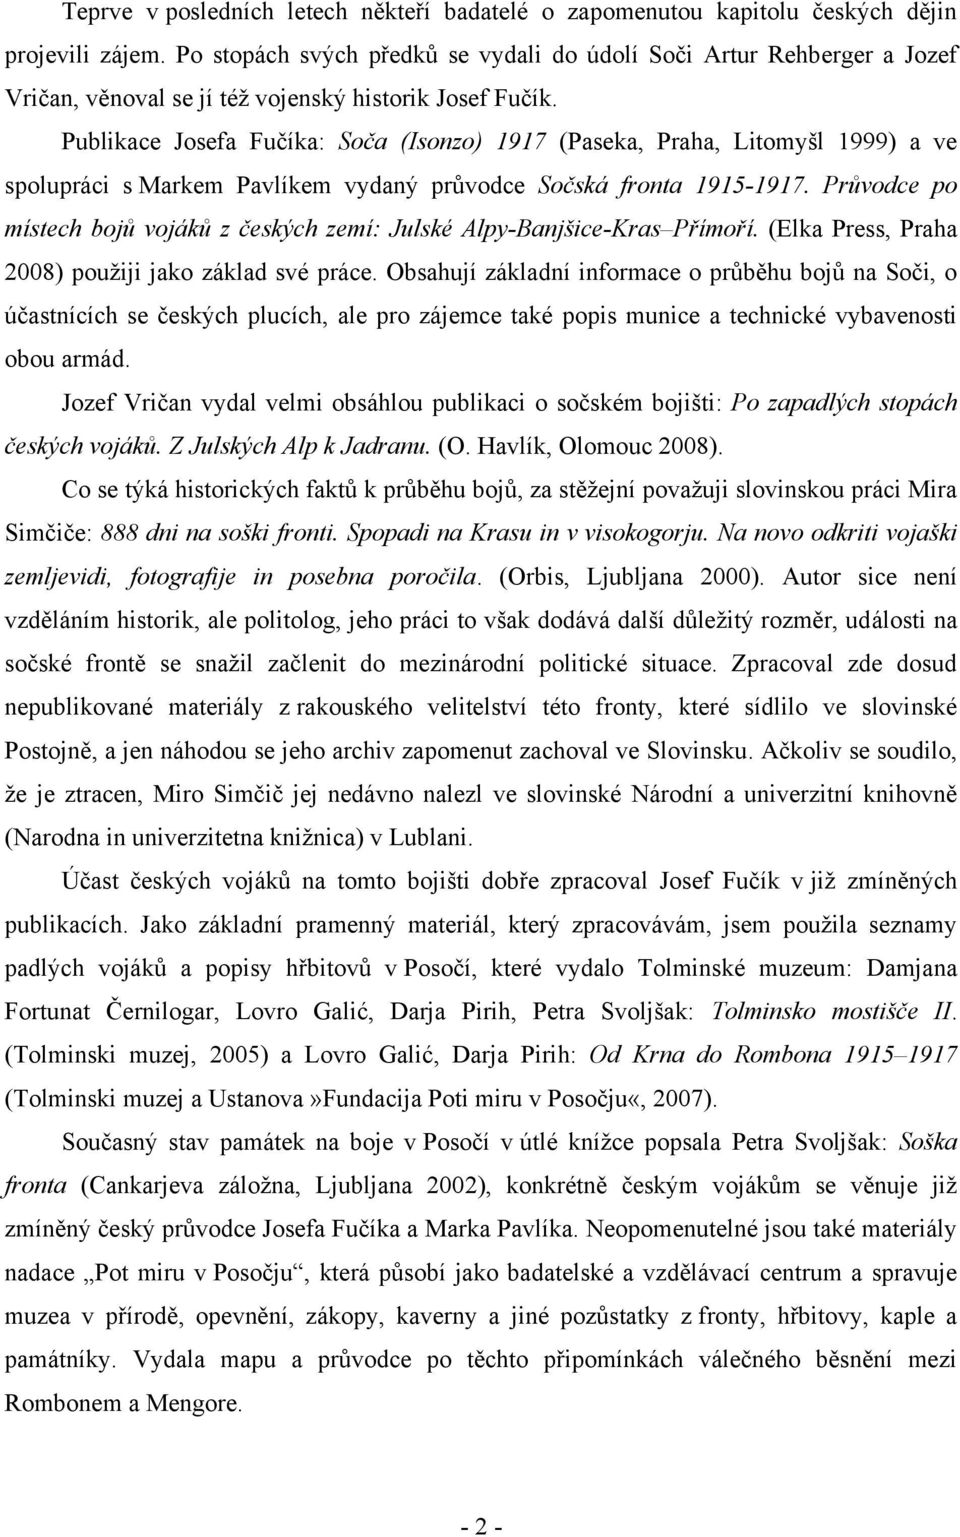 Publikace Josefa Fučíka: Soča (Isonzo) 1917 (Paseka, Praha, Litomyšl 1999) a ve spolupráci s Markem Pavlíkem vydaný průvodce Sočská fronta 1915-1917.